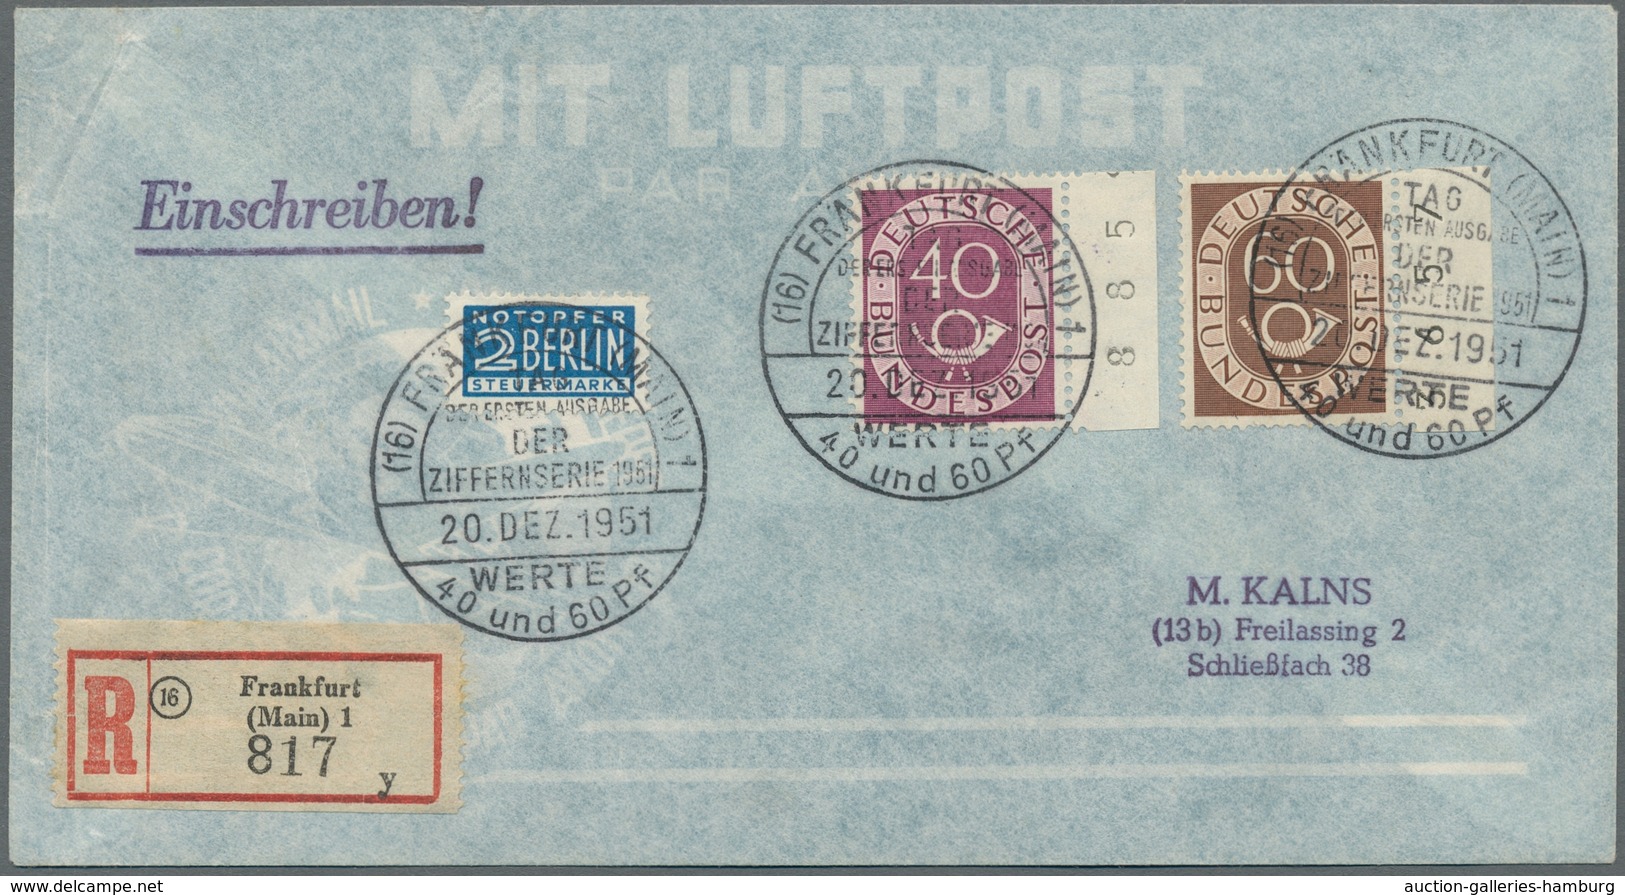 Bundesrepublik Deutschland: 1951, "Posthorn", kompletter Satz je Wert als Randwert (!!!) auf sechs E